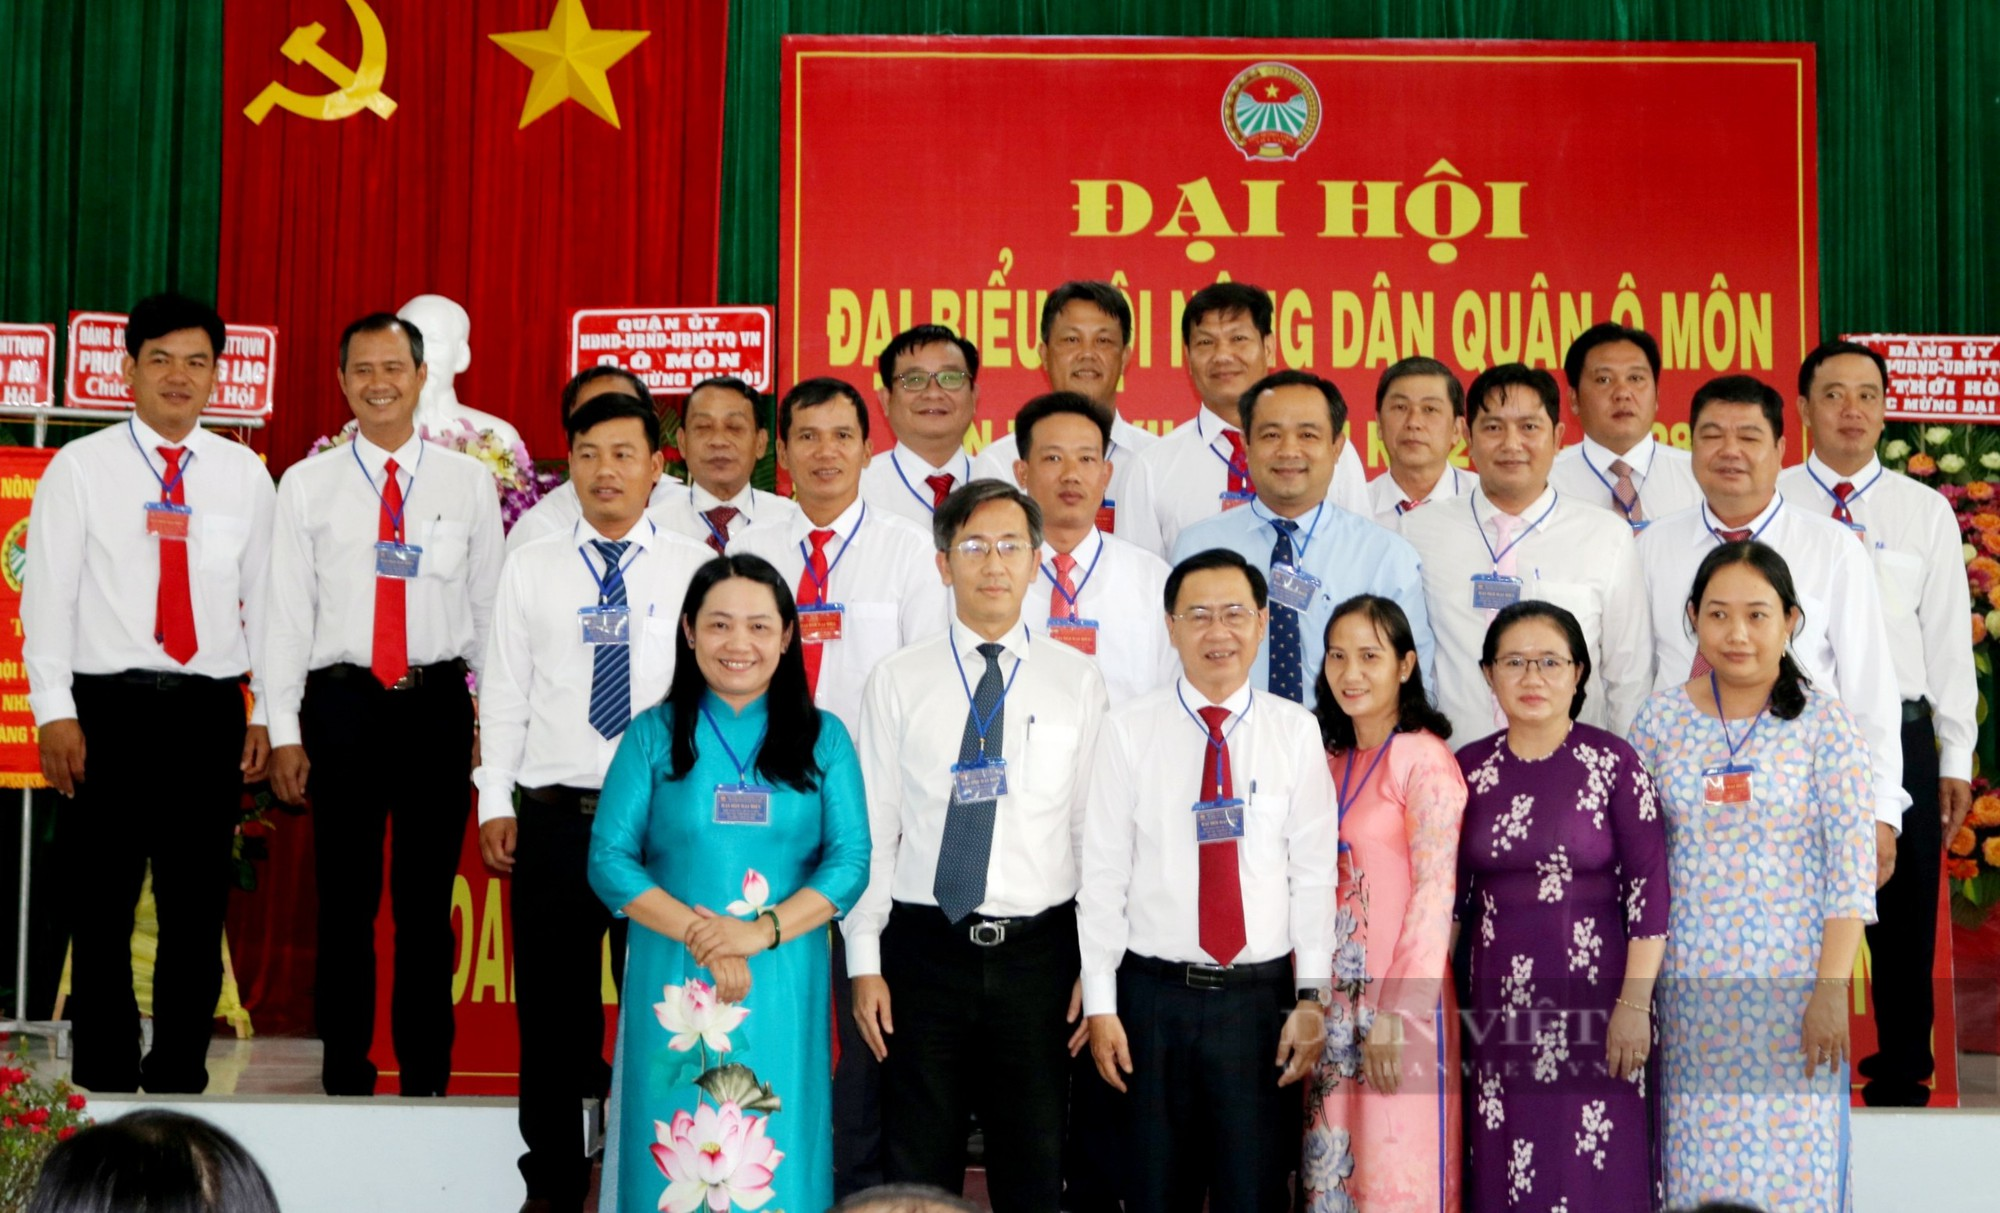 Cần Thơ: Đại hội Hội Nông dân quận Ô Môn, ông Trương Văn Phúc được bầu chức Chủ tịch - Ảnh 5.